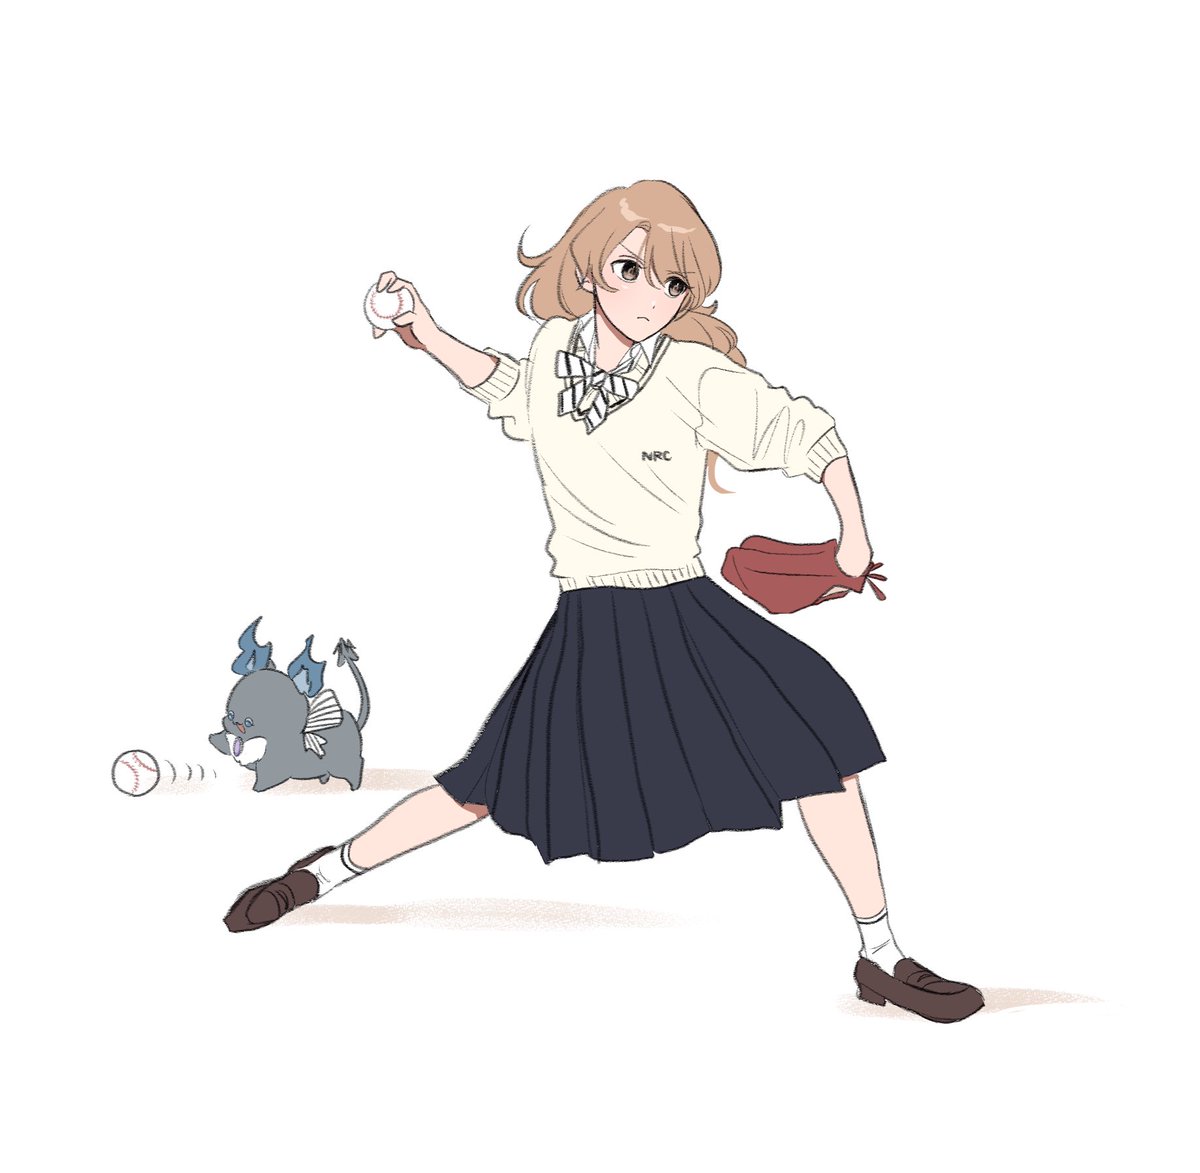 1girl skirt baseball baseball mitt school uniform white background bow  illustration images